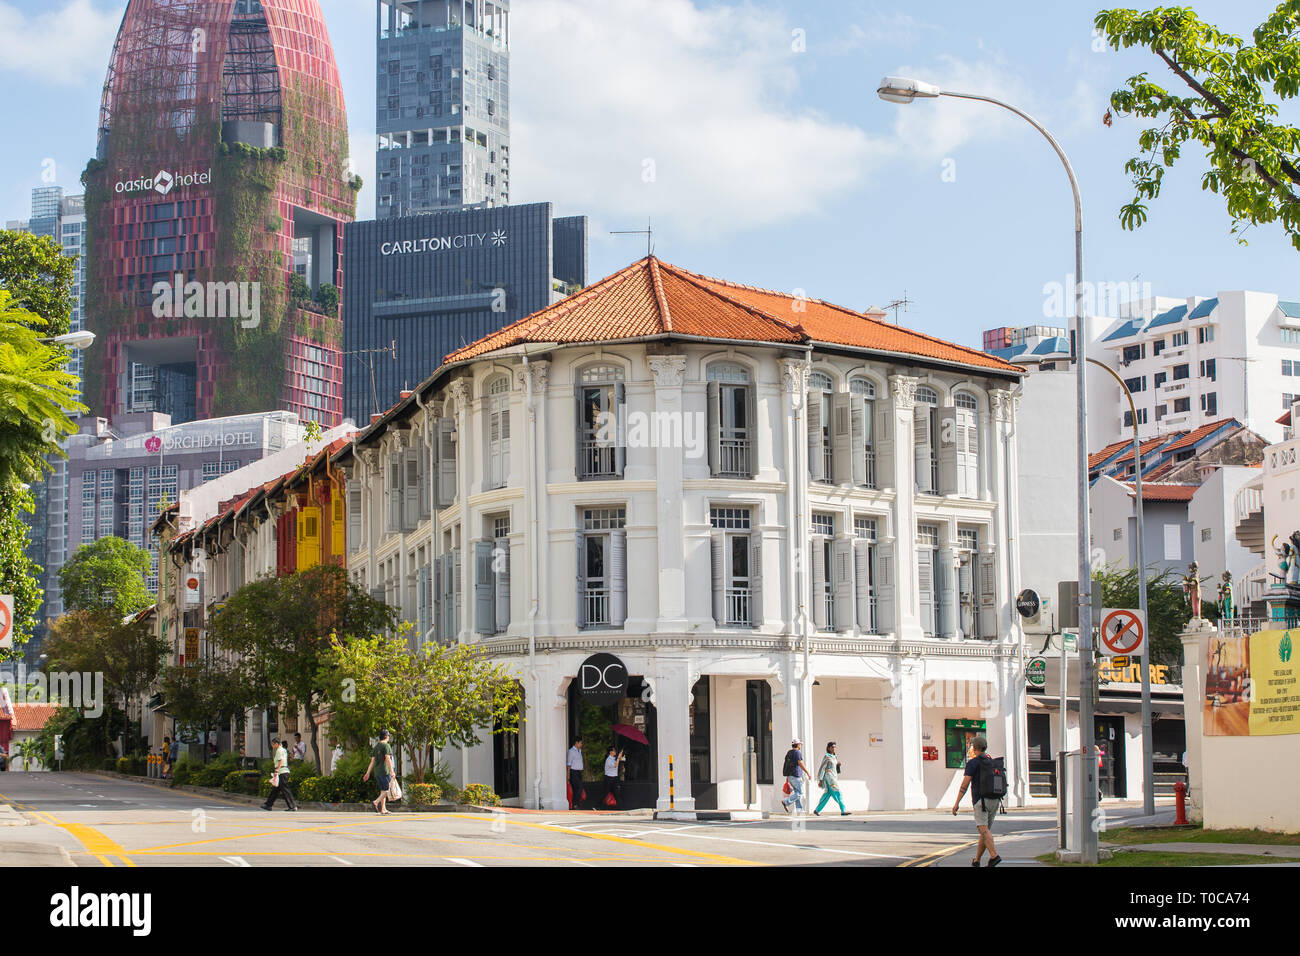 De couleur blanche, des boutiques épurées le long de la rue Kreta Ayer, le fond est rempli de gratte-ciel modernes tels que l'hôtel et le résidentiel. Singapour. Banque D'Images